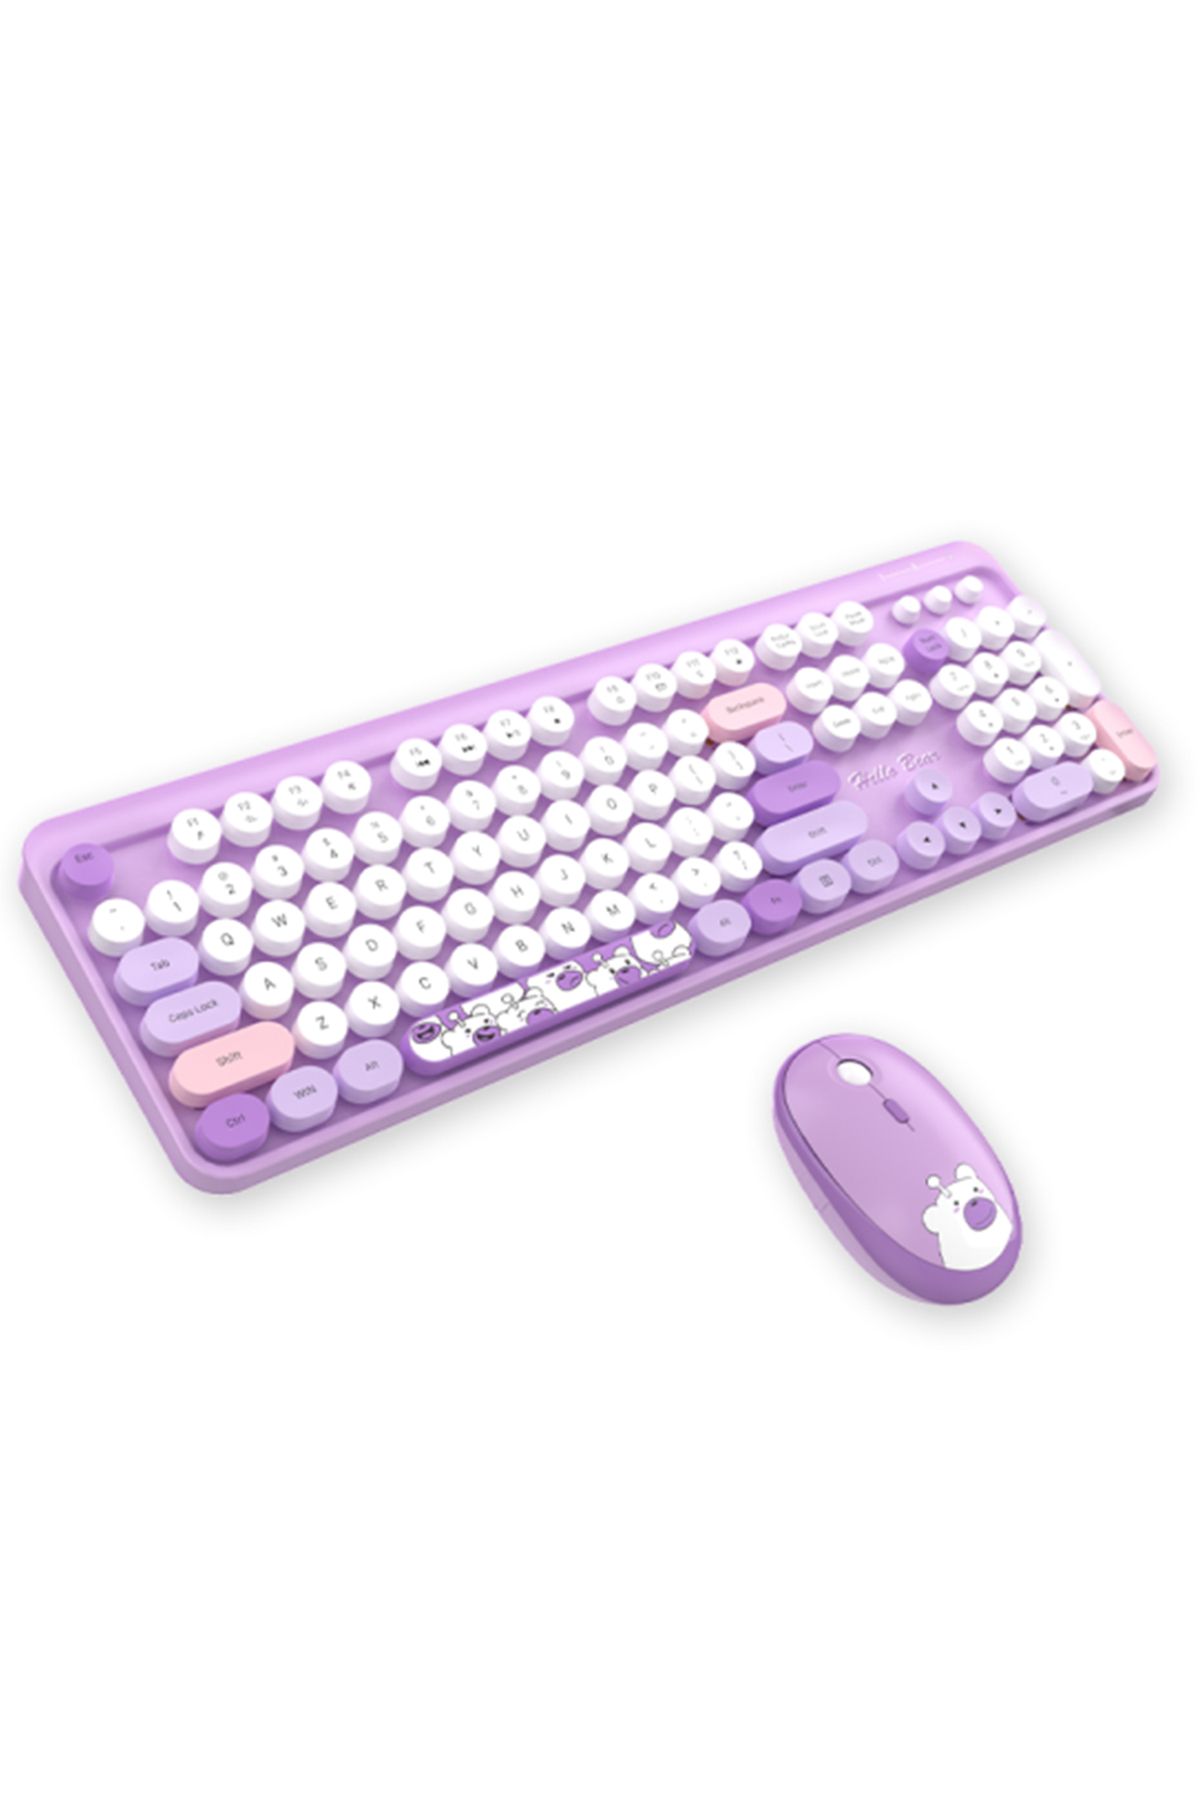 Microcase Geezer Ayıcık Desenli Kablosuz Renkli Yuvarlak Tuşlu Klavye Mouse Set-AL4186